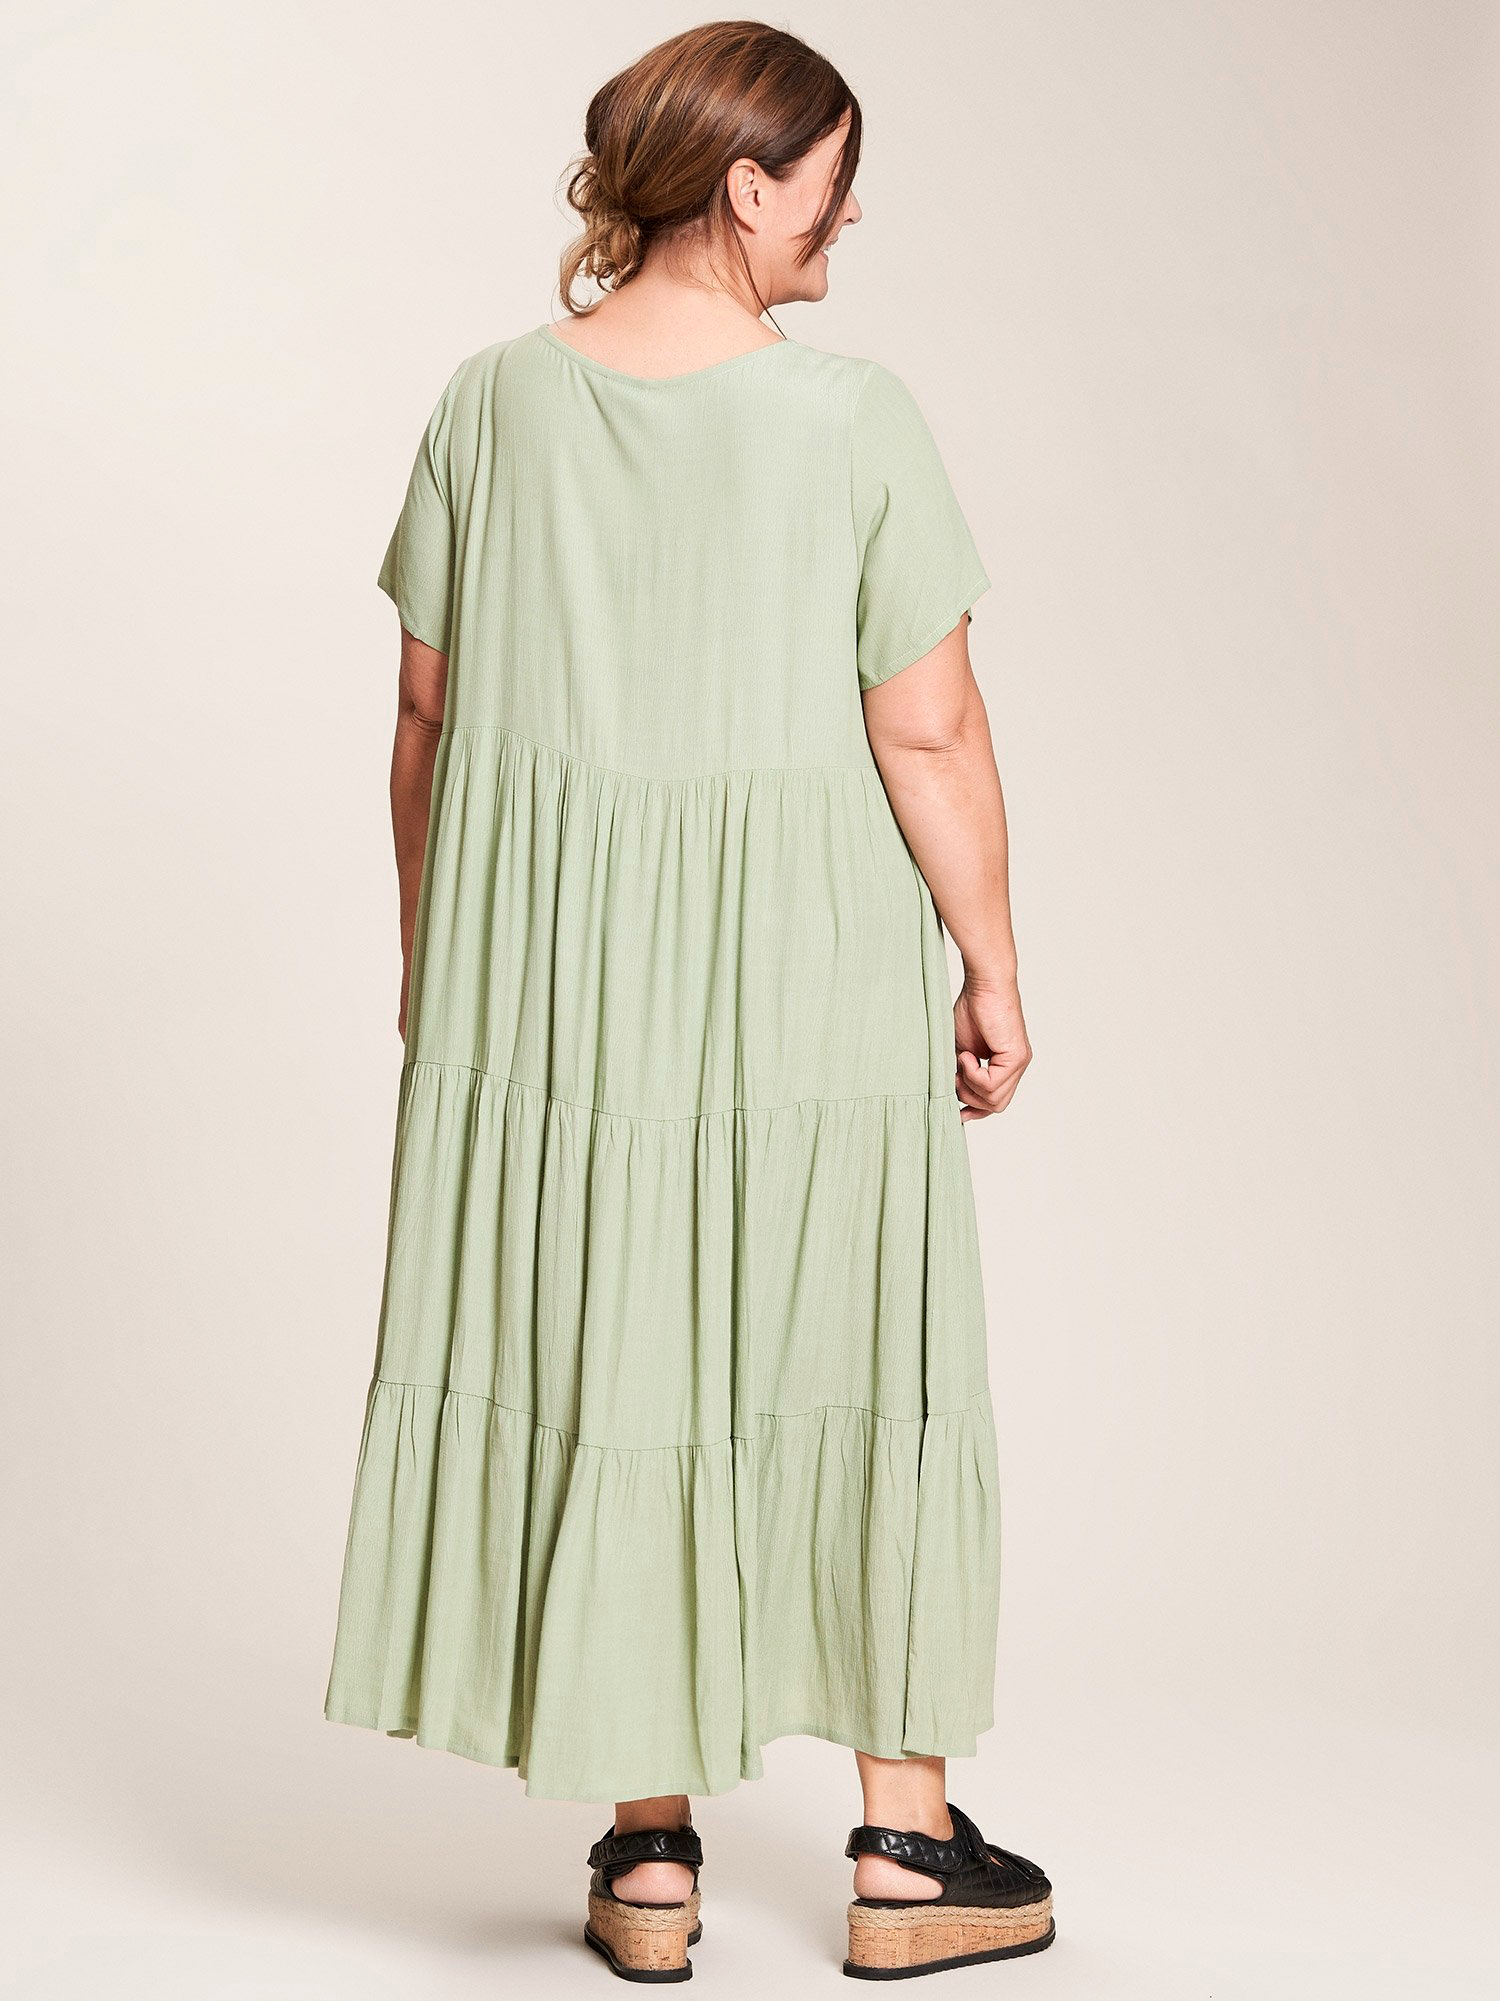 Sussie - lang kjole i lys grønn viskose med volang fra Gozzip